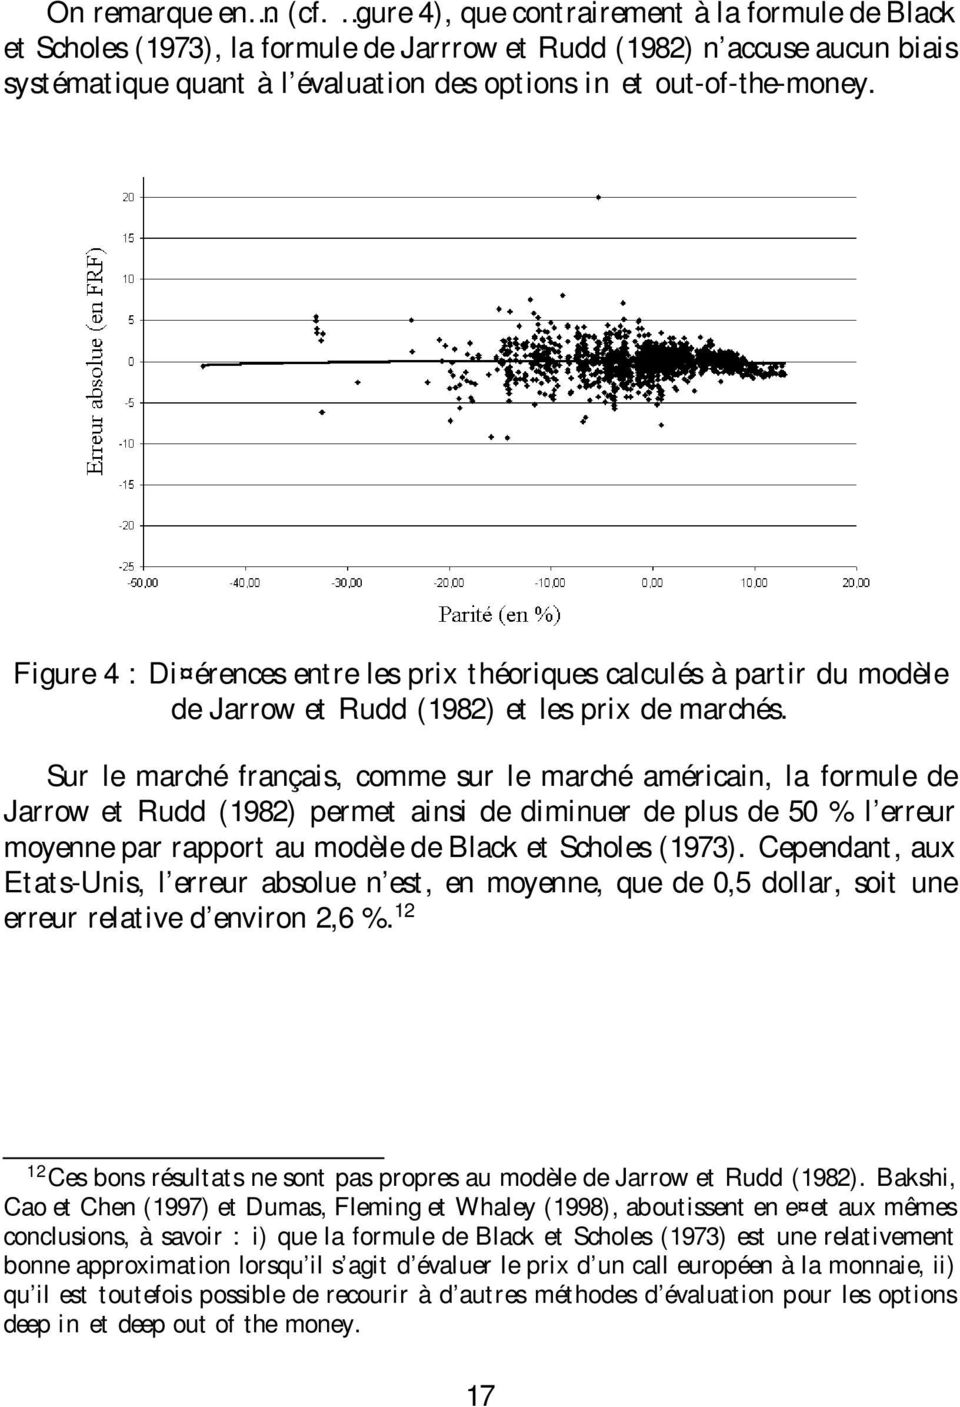 Figure 4 : Di érences entre les prix théoriques calculés à partir du modèle de Jarrow et Rudd (1982) et les prix de marchés.